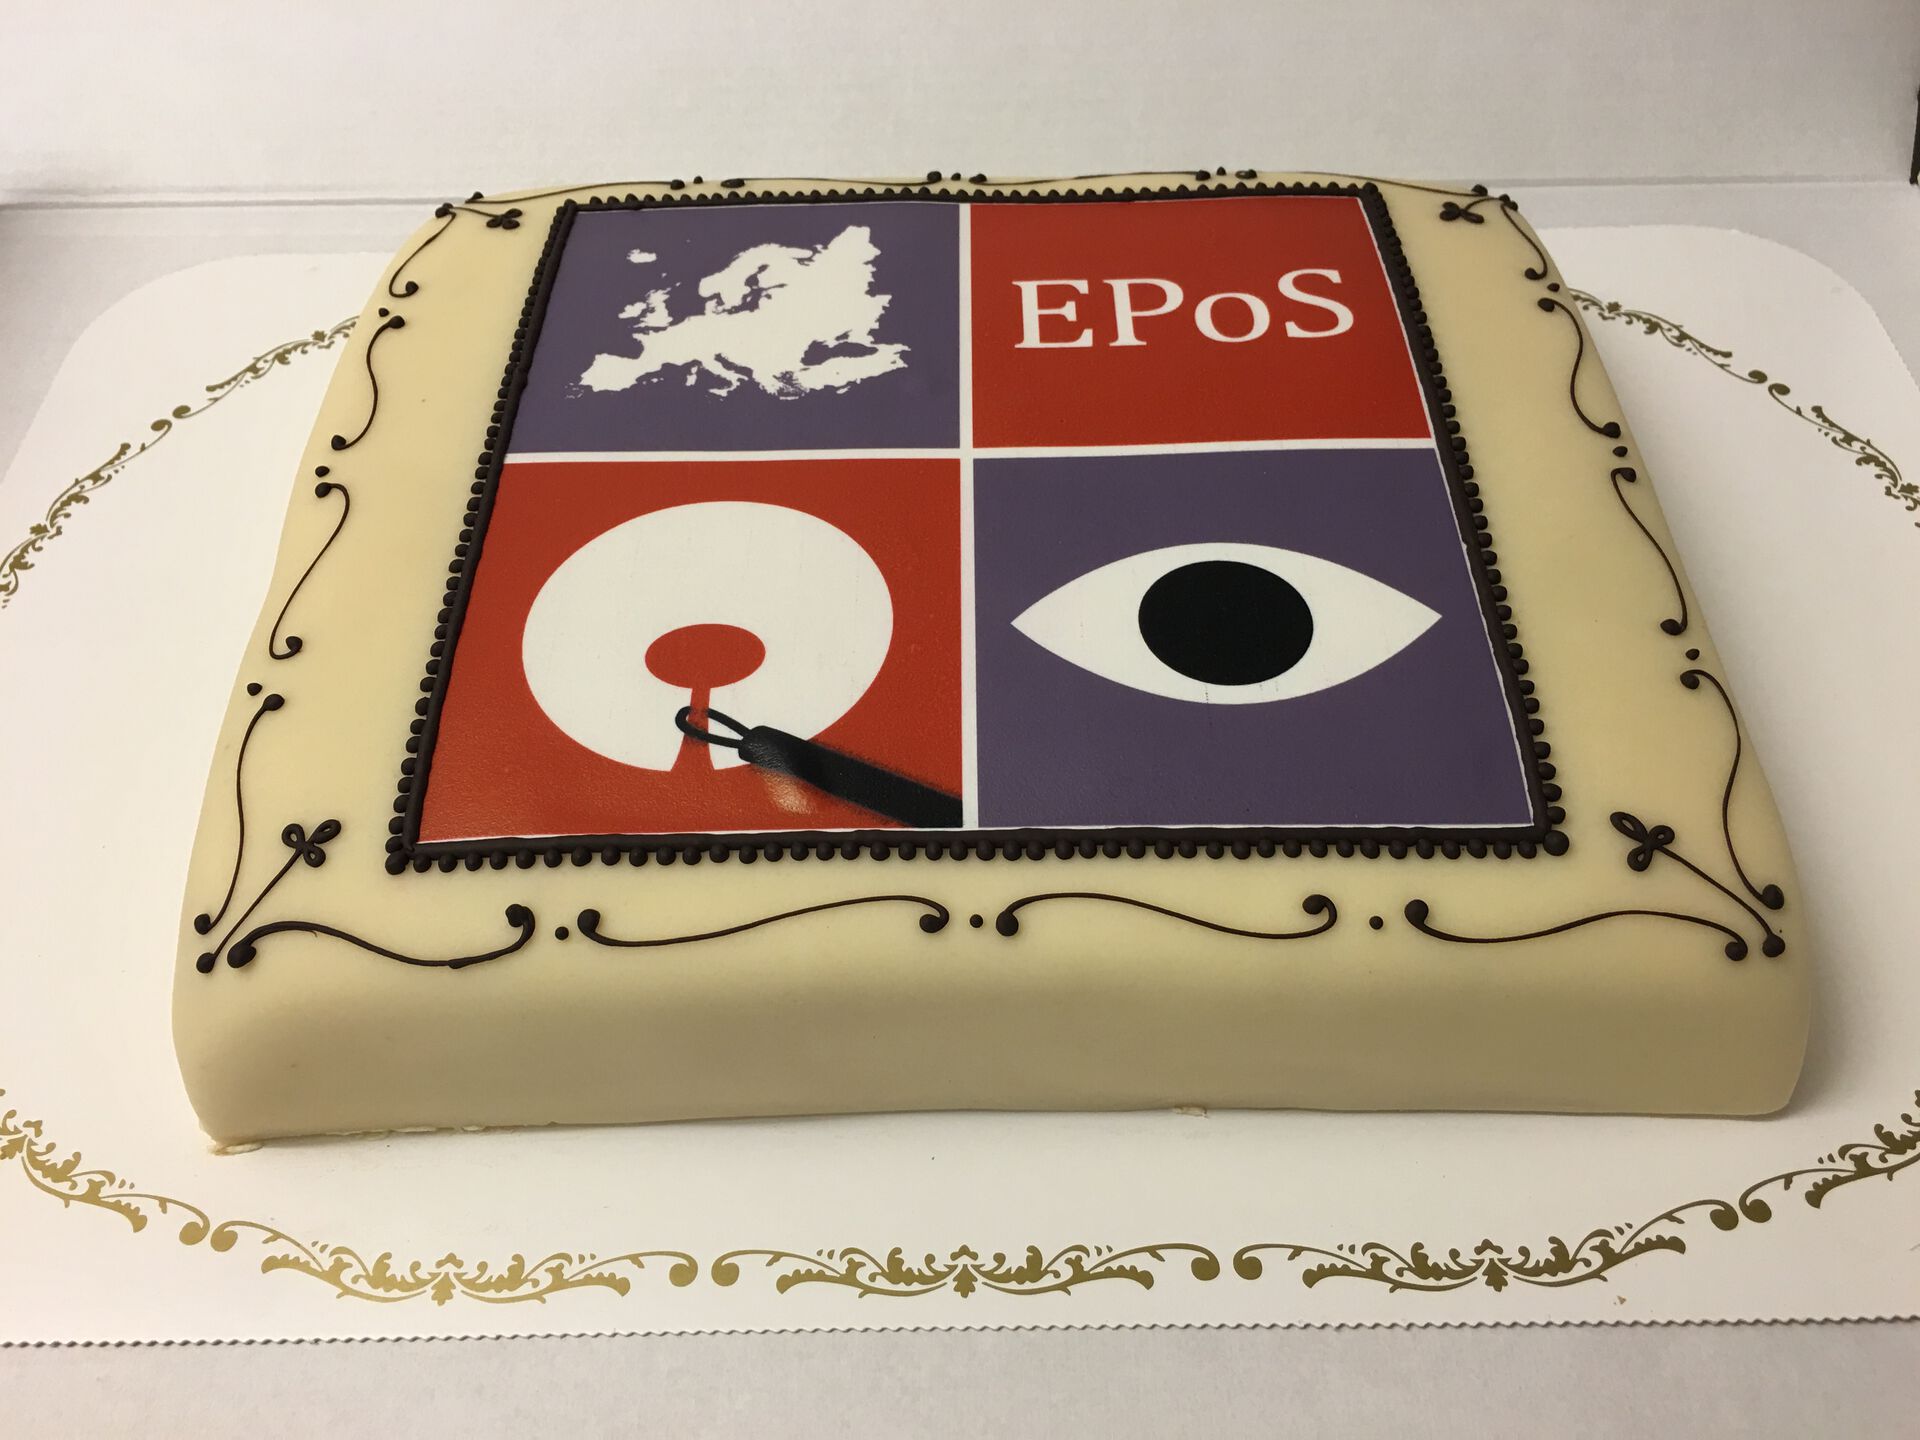 Cake EPOS